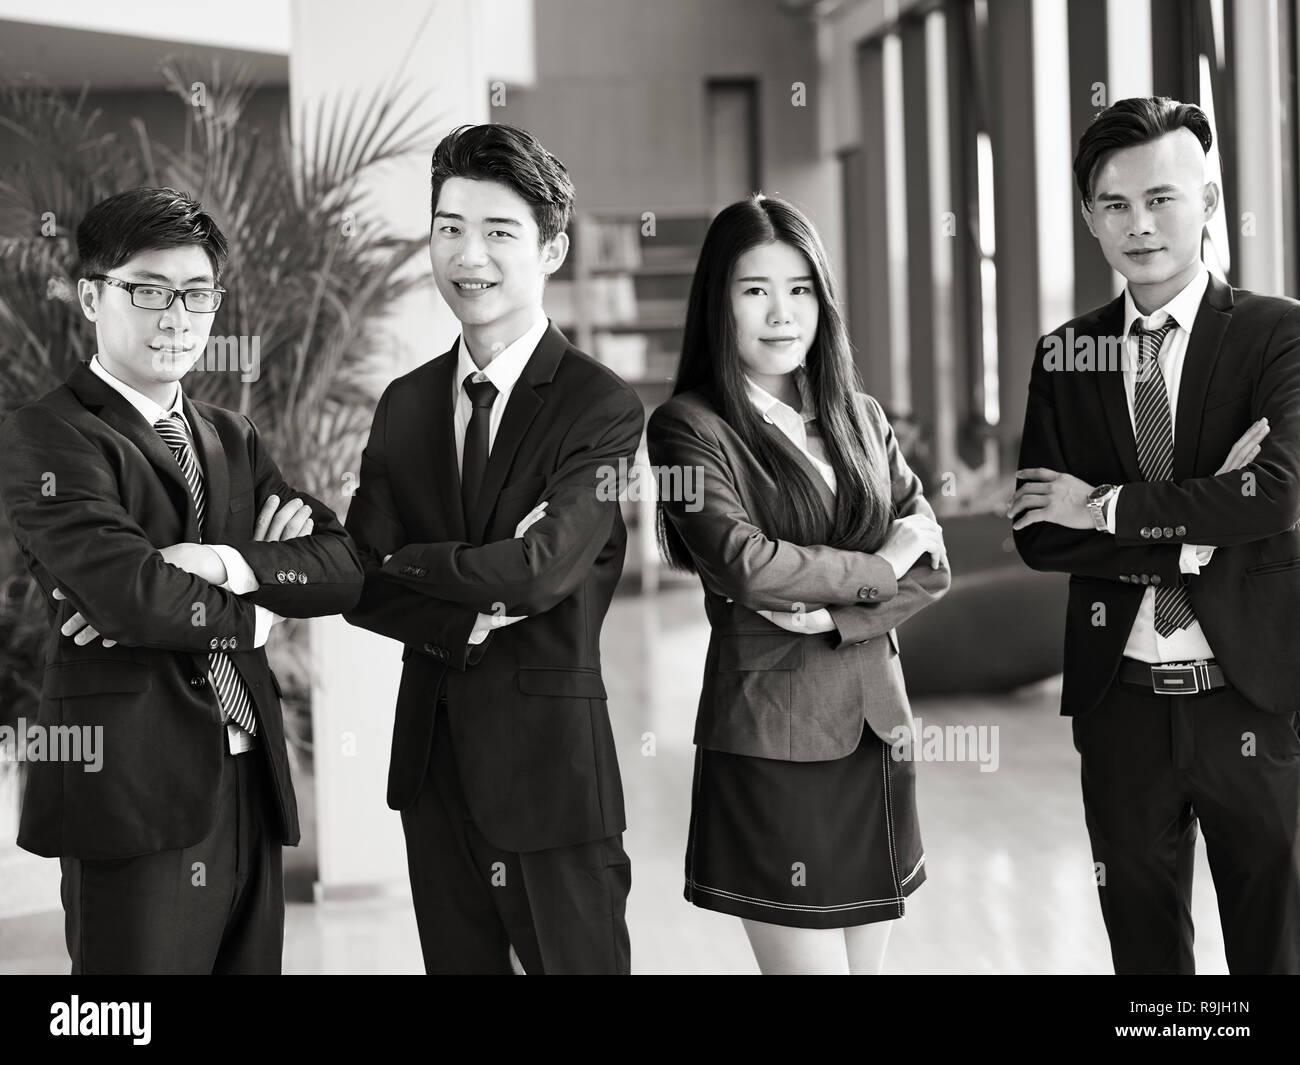 Portrait d'un groupe de jeunes gens d'affaires asiatiques standing in office les bras croisés, souriant, noir et blanc. Banque D'Images